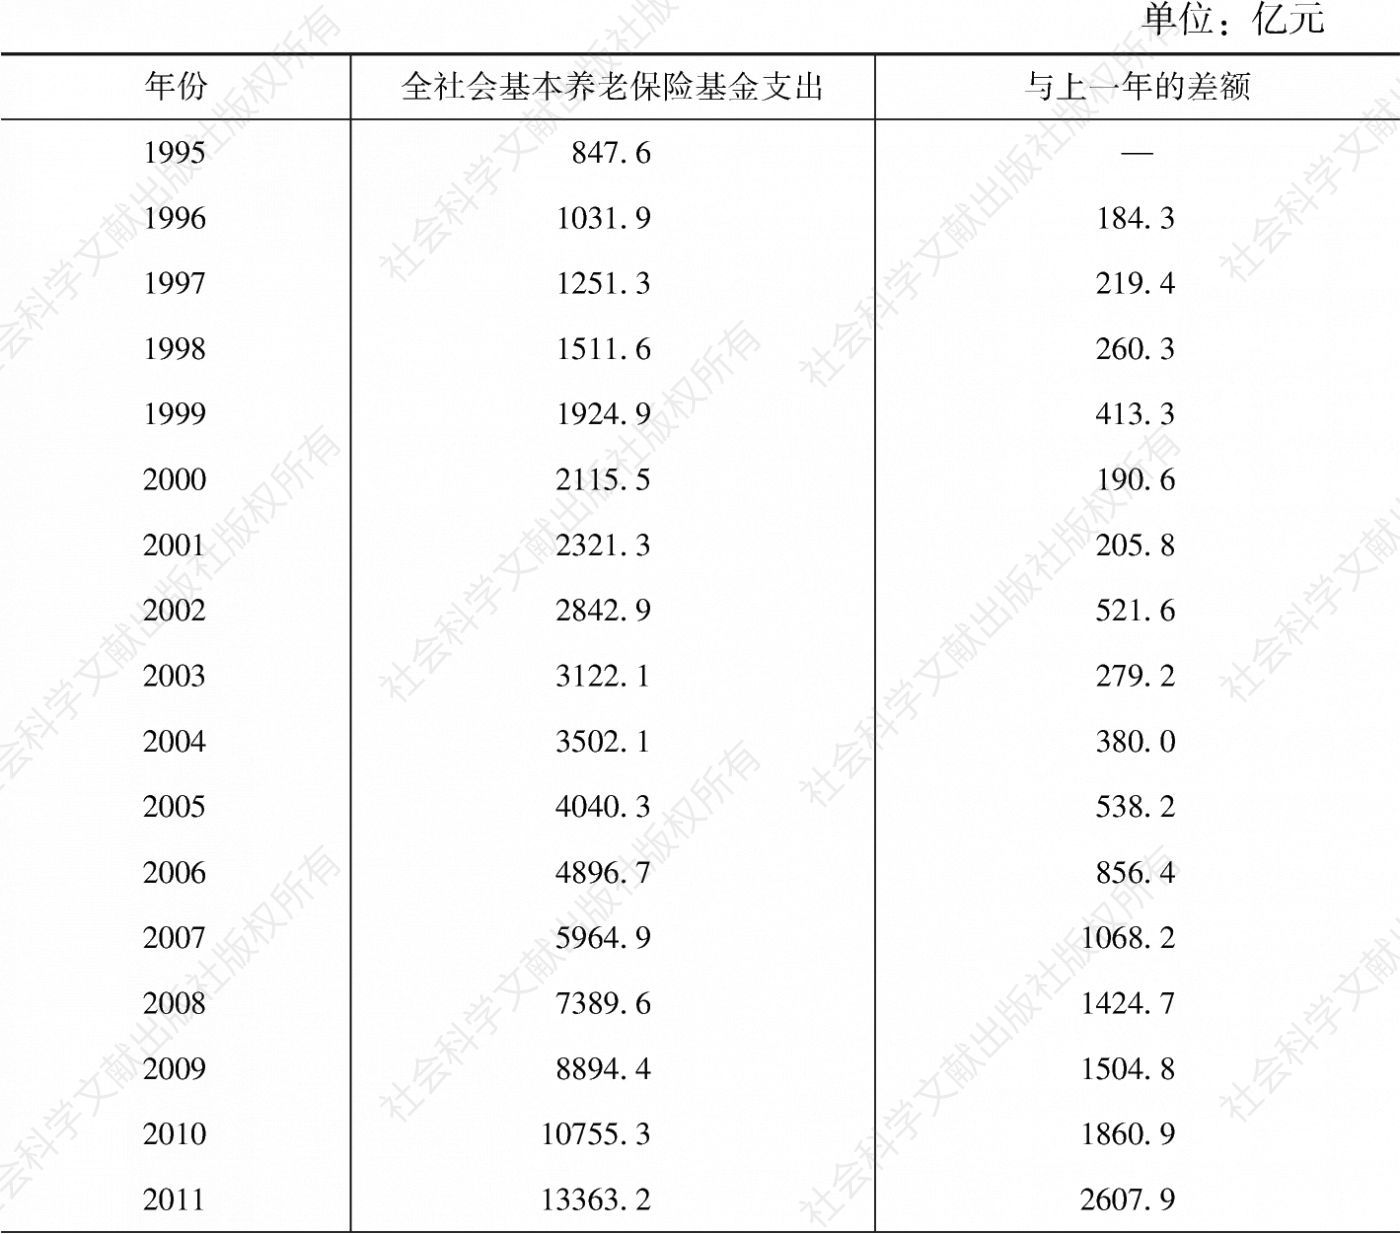 表11-38 1995～2015年中国全社会基本养老保险基金支出